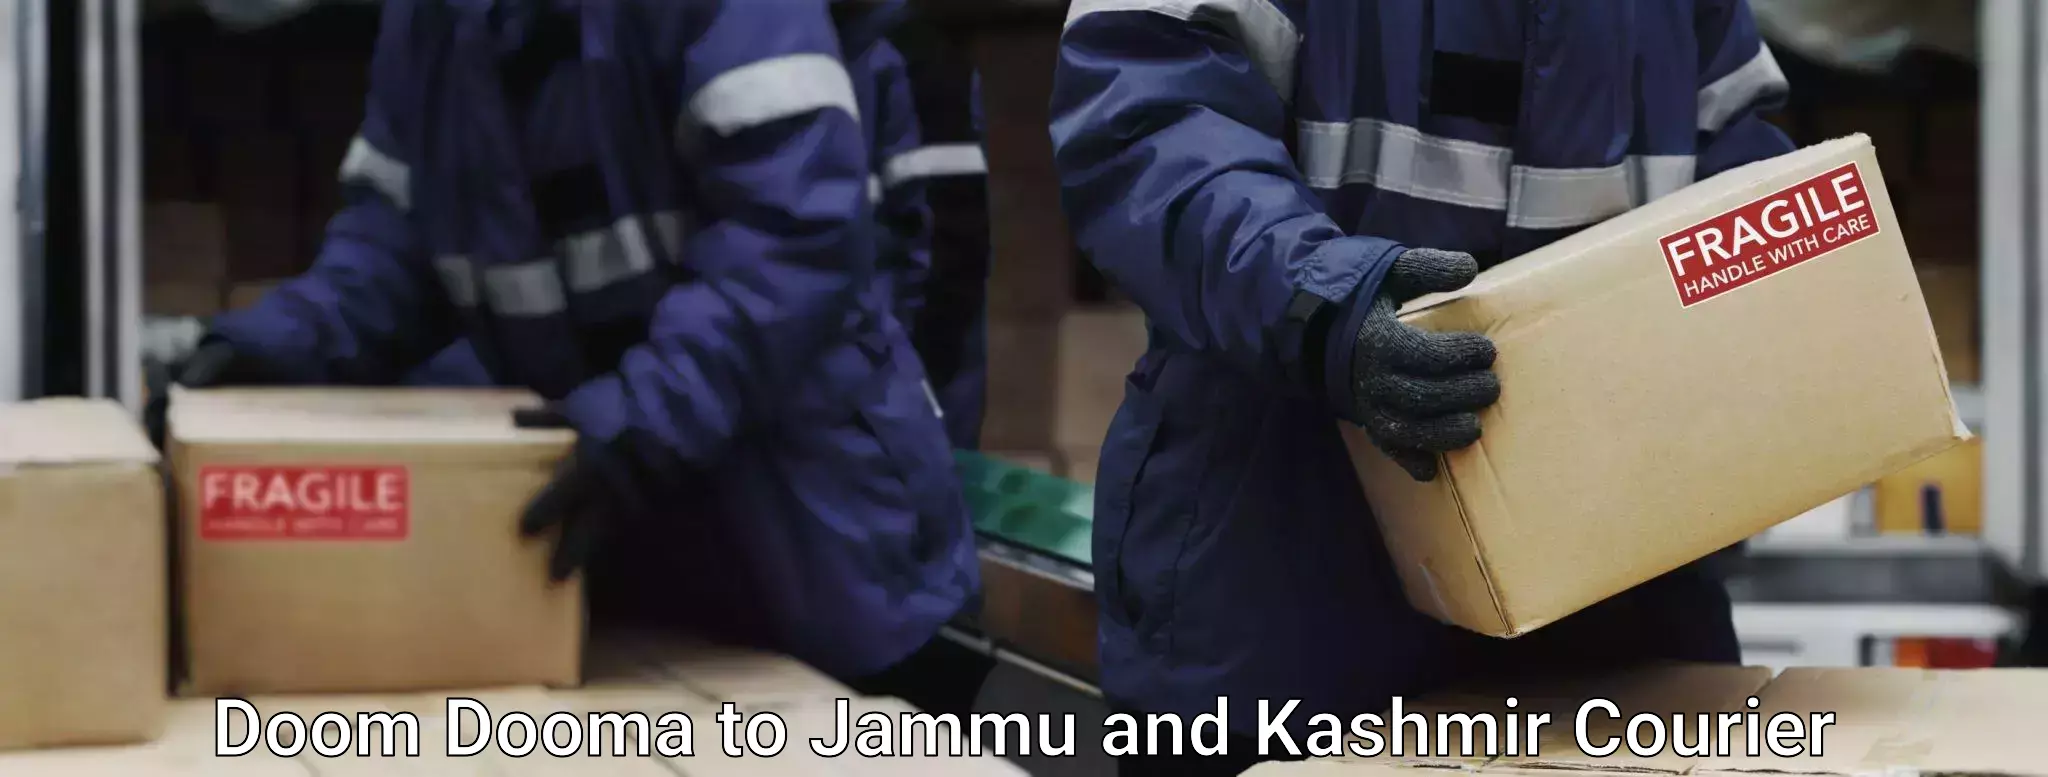 Bulk luggage shipping Doom Dooma to Srinagar Kashmir